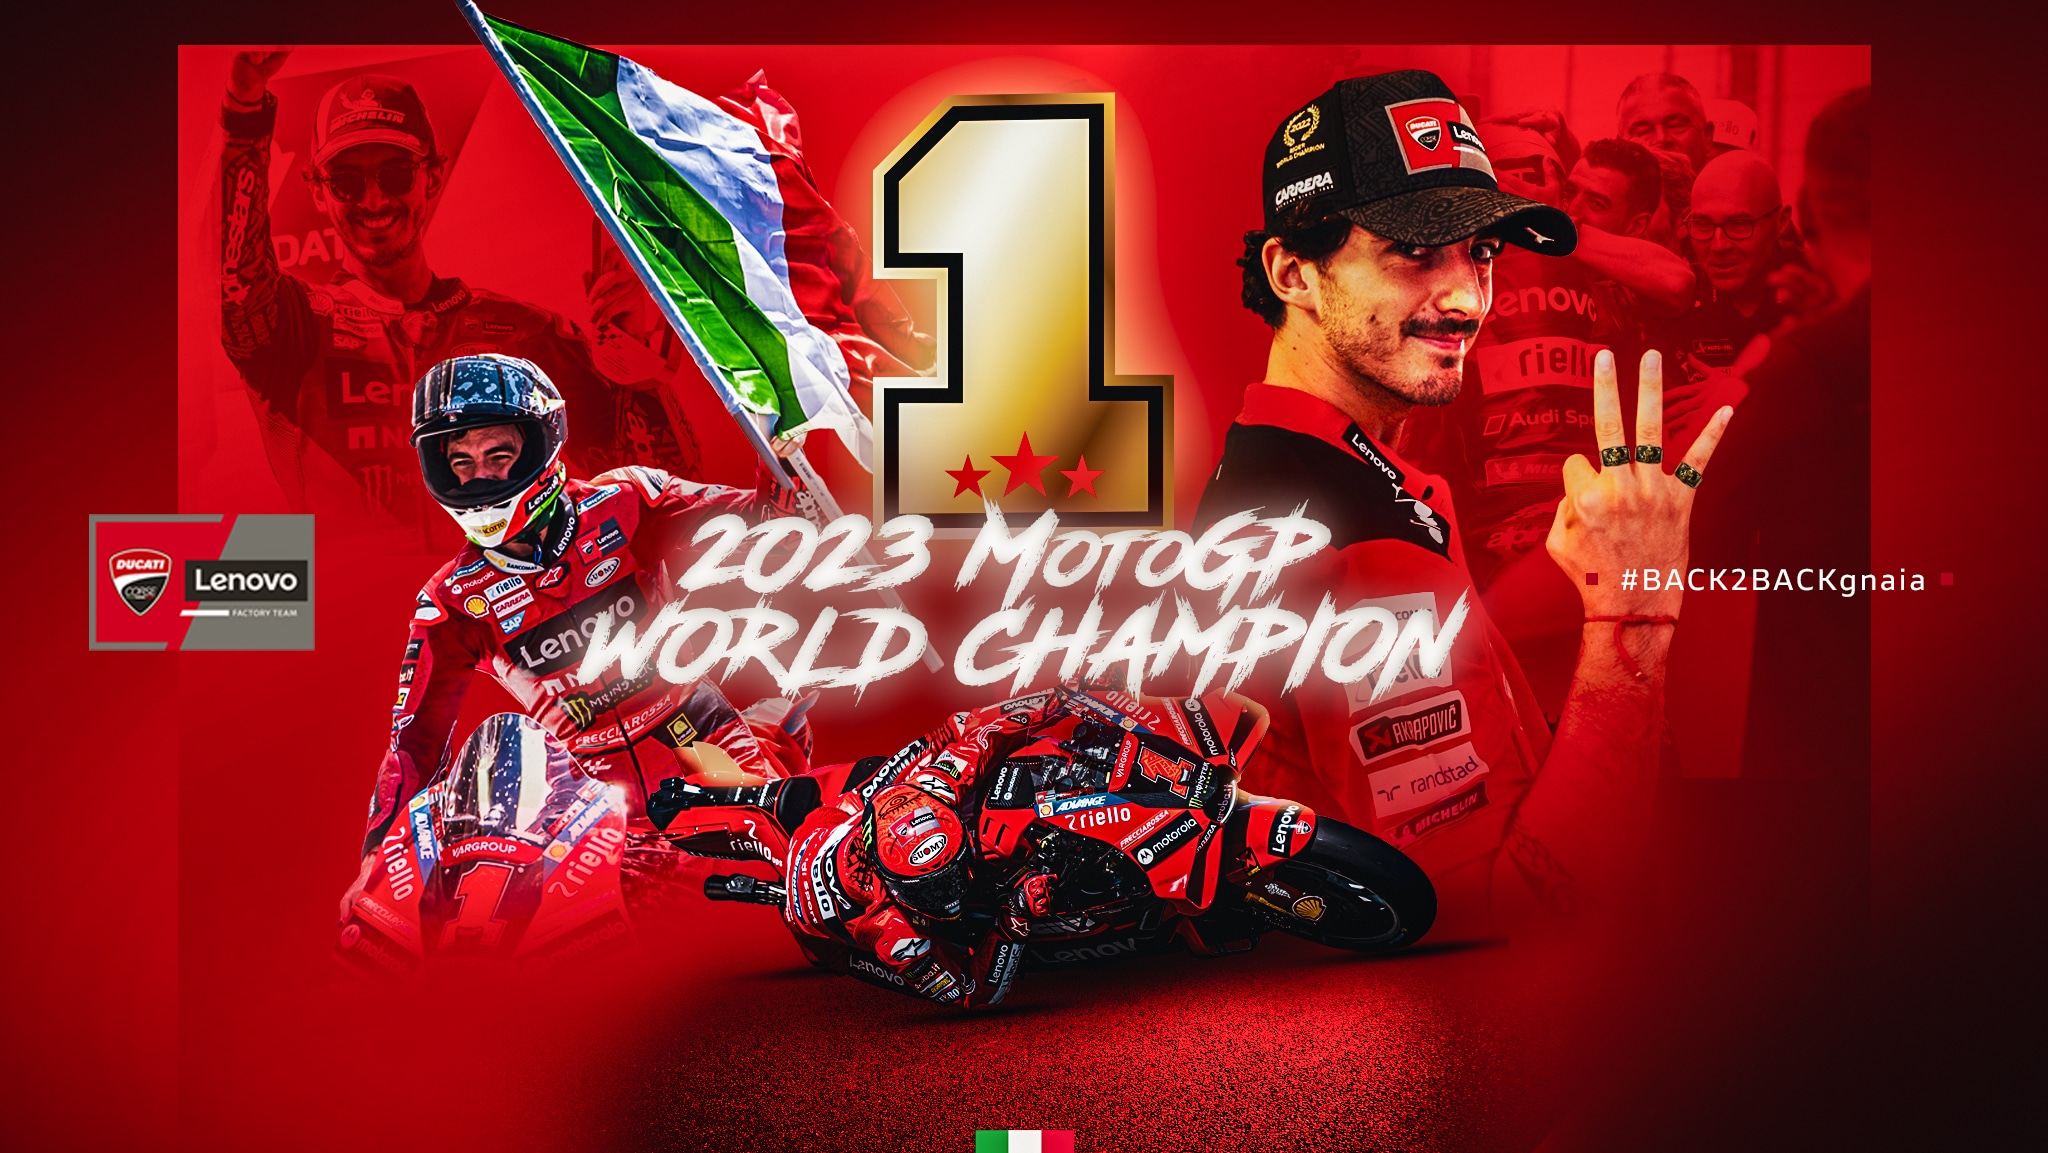 Campeões do Mundo! A paixão e tecnologia do ‘Made in Italy’ conquistam o MotoGP